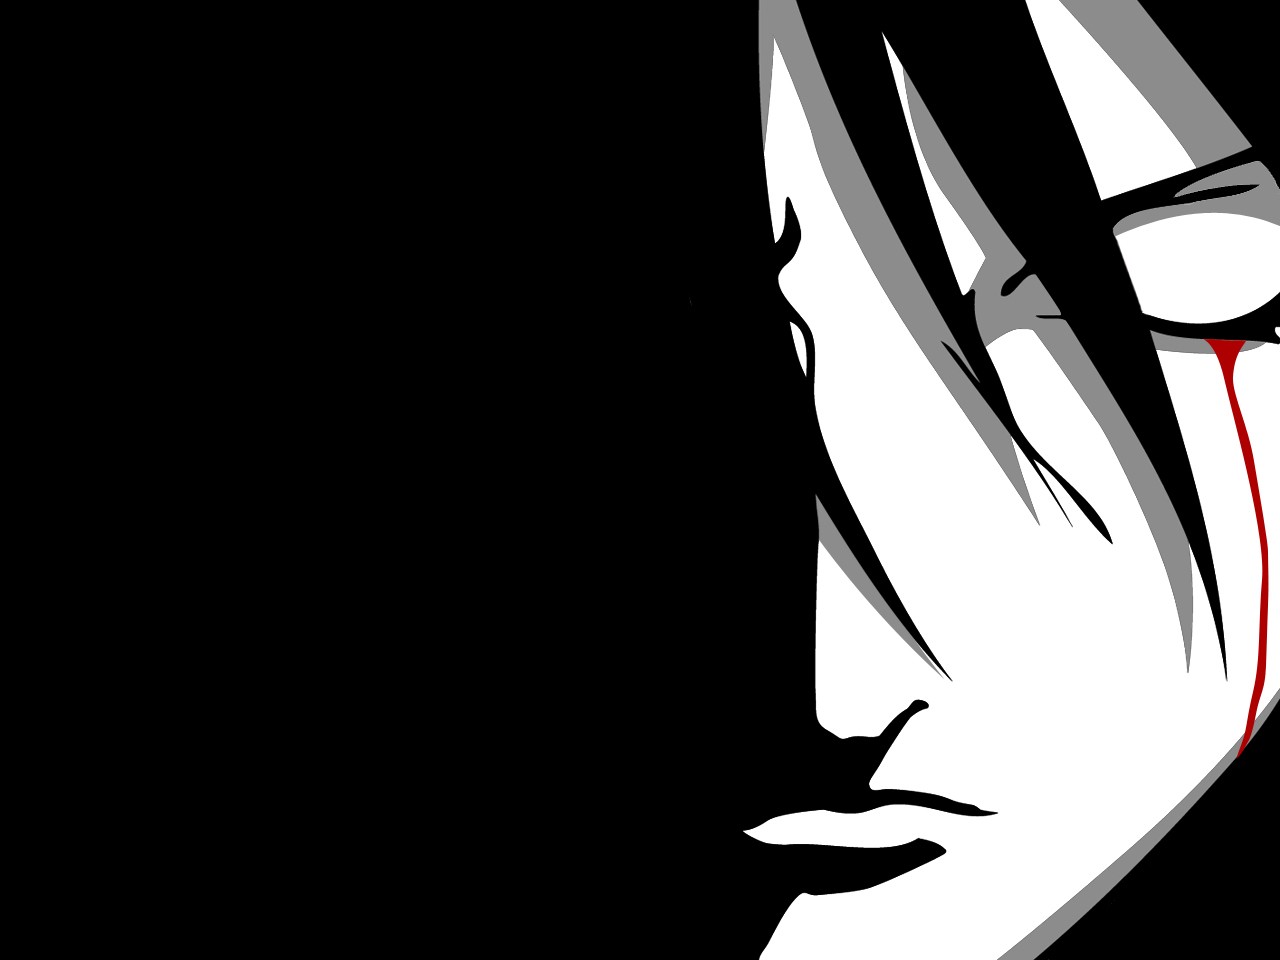 Anime 1280x960 Naruto Shippuden anime vectors closed eyes Bleeding Eyes anime face minimalism simple background Sharingan Uchiha Sasuke